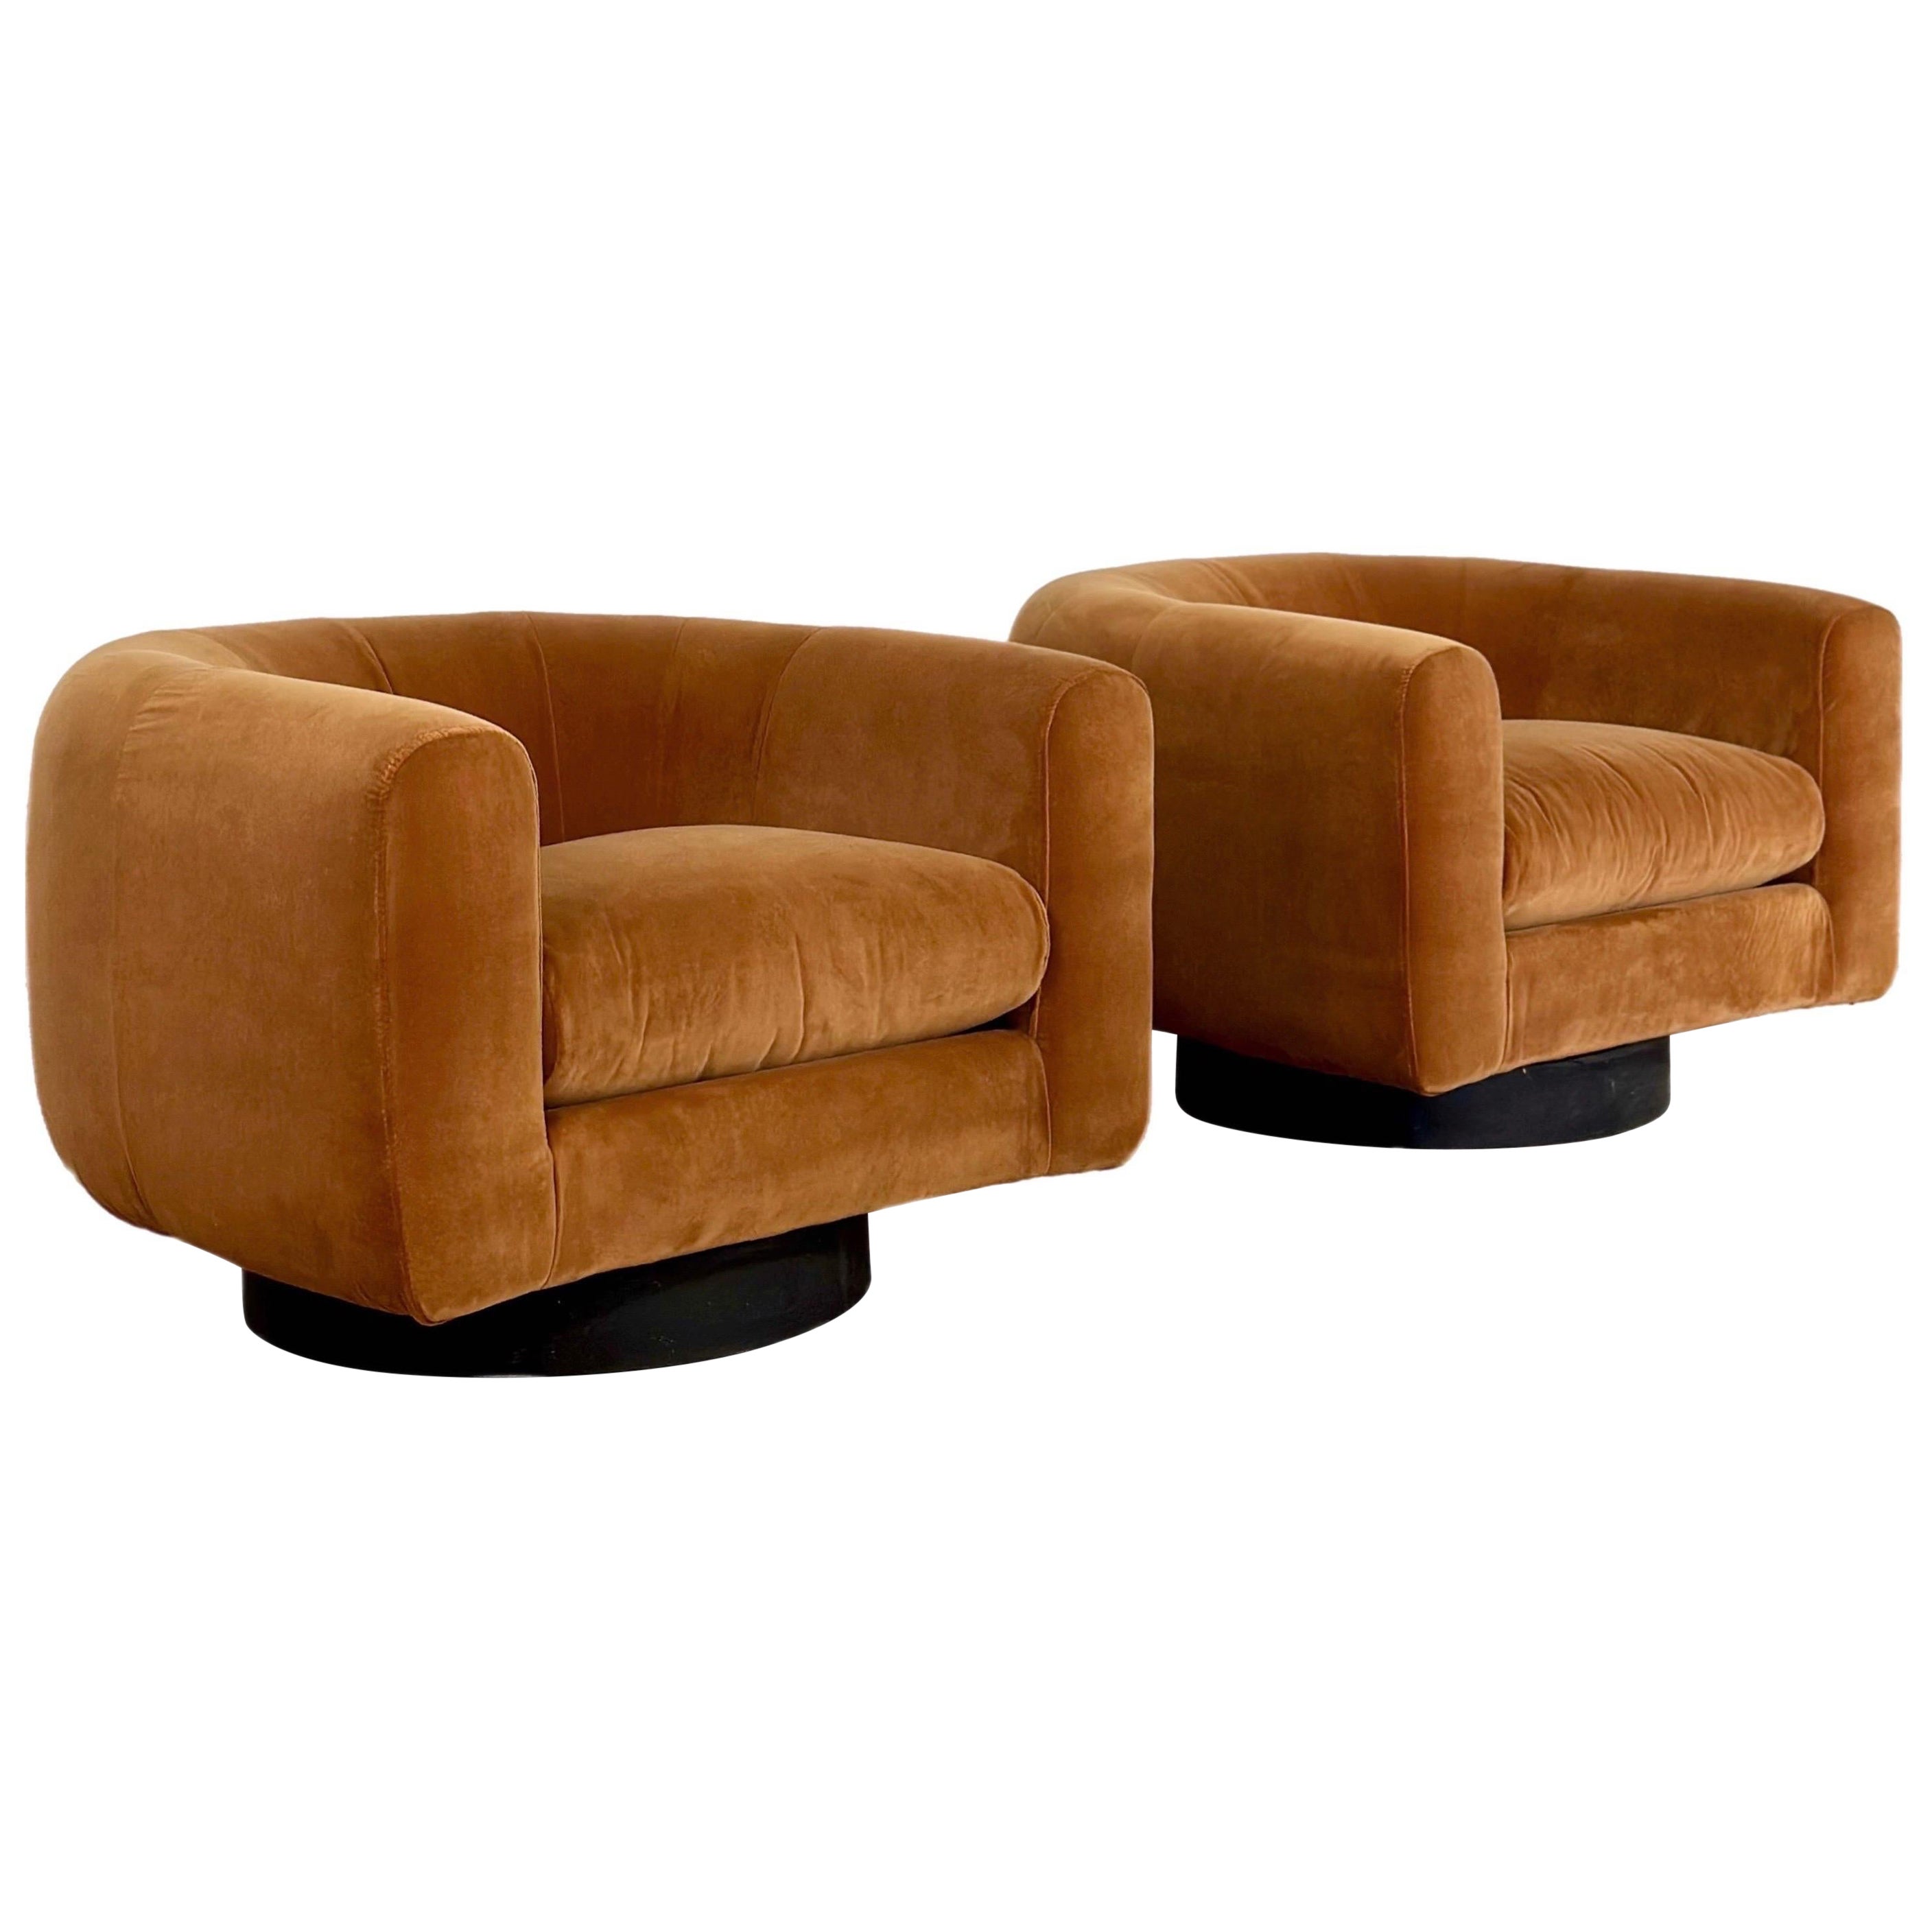 1970er Jahre Milo Baughman Stil neu gepolsterte ockerfarbene drehbare Stühle mit Fassrückenlehne - ein Set